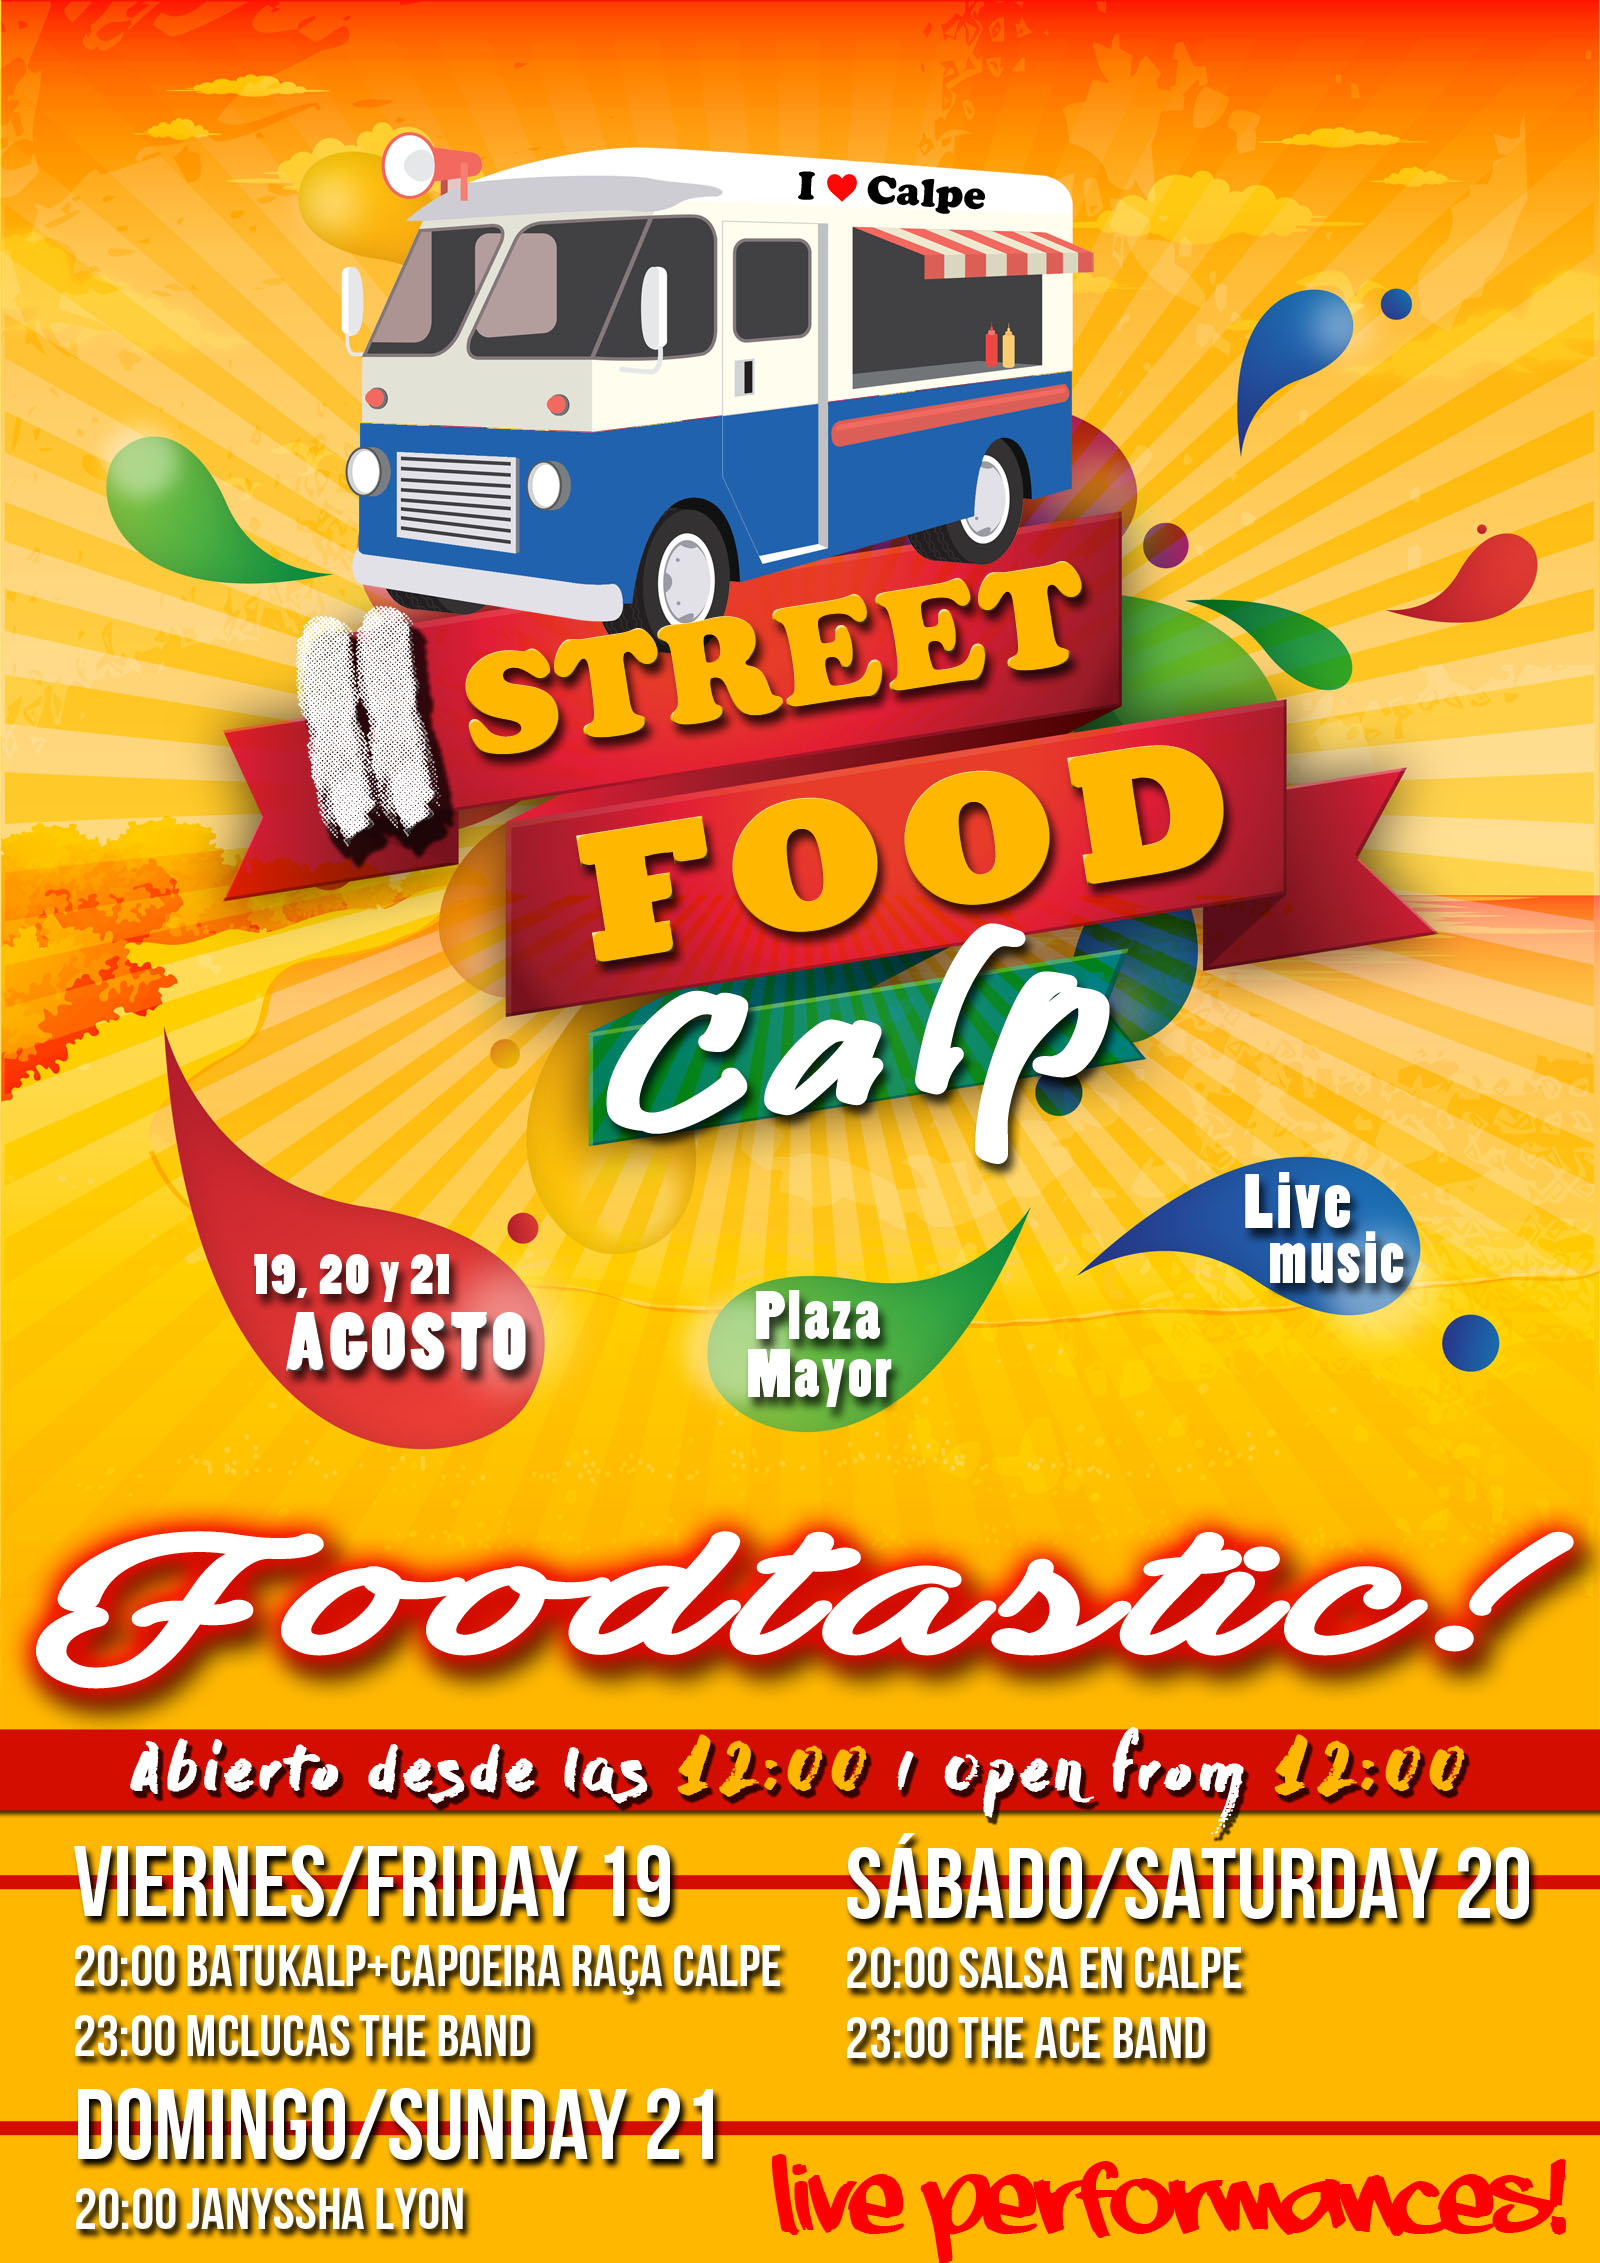 , Algo diferente pasará del 19-21.Agosto en Calpe “Street Food Calp”, Mario Schumacher Blog